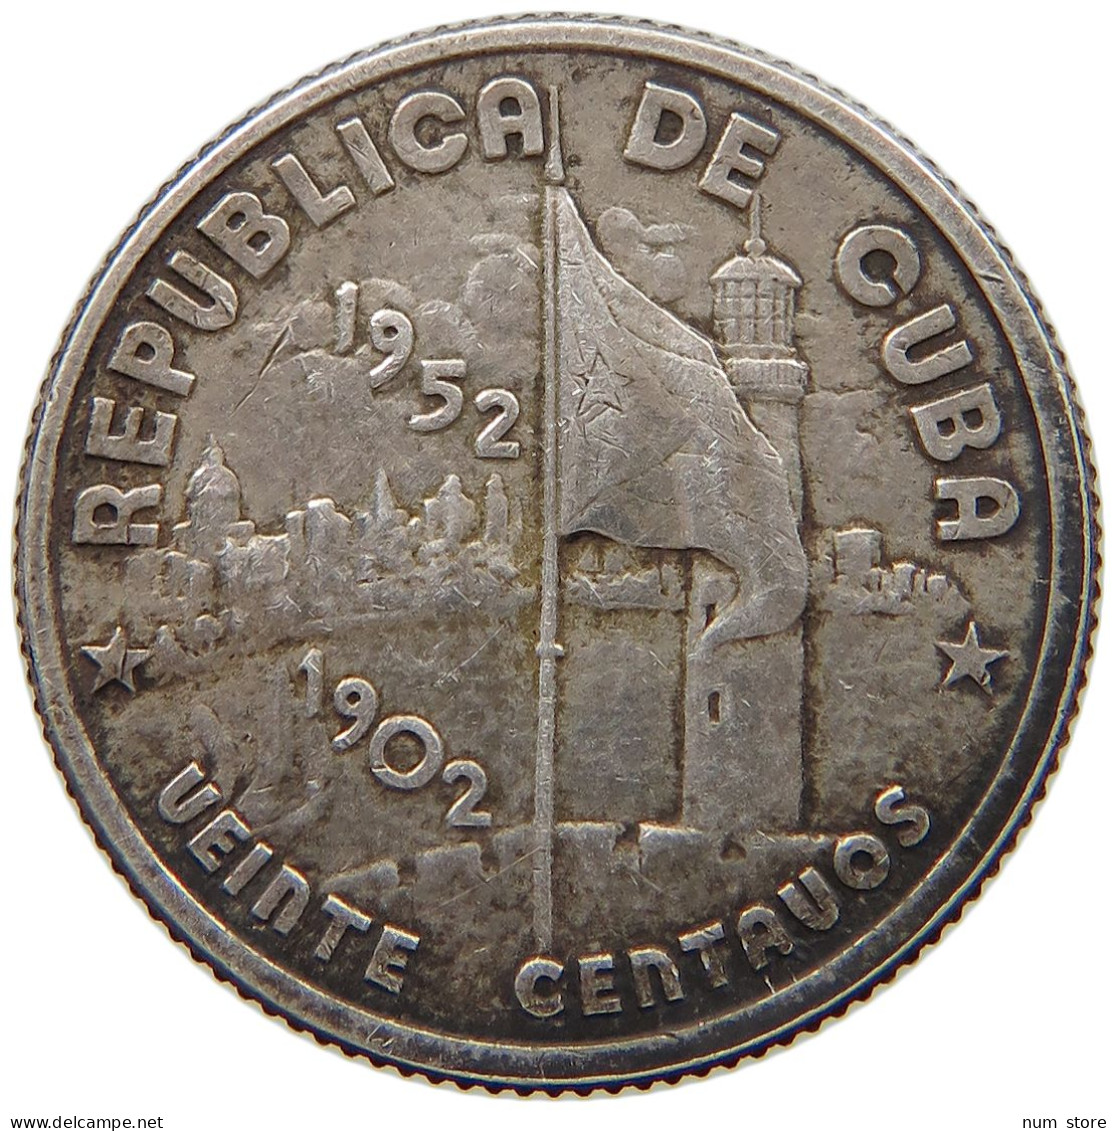 CUBA 20 CENTAVOS 1952  #MA 016750 - Cuba